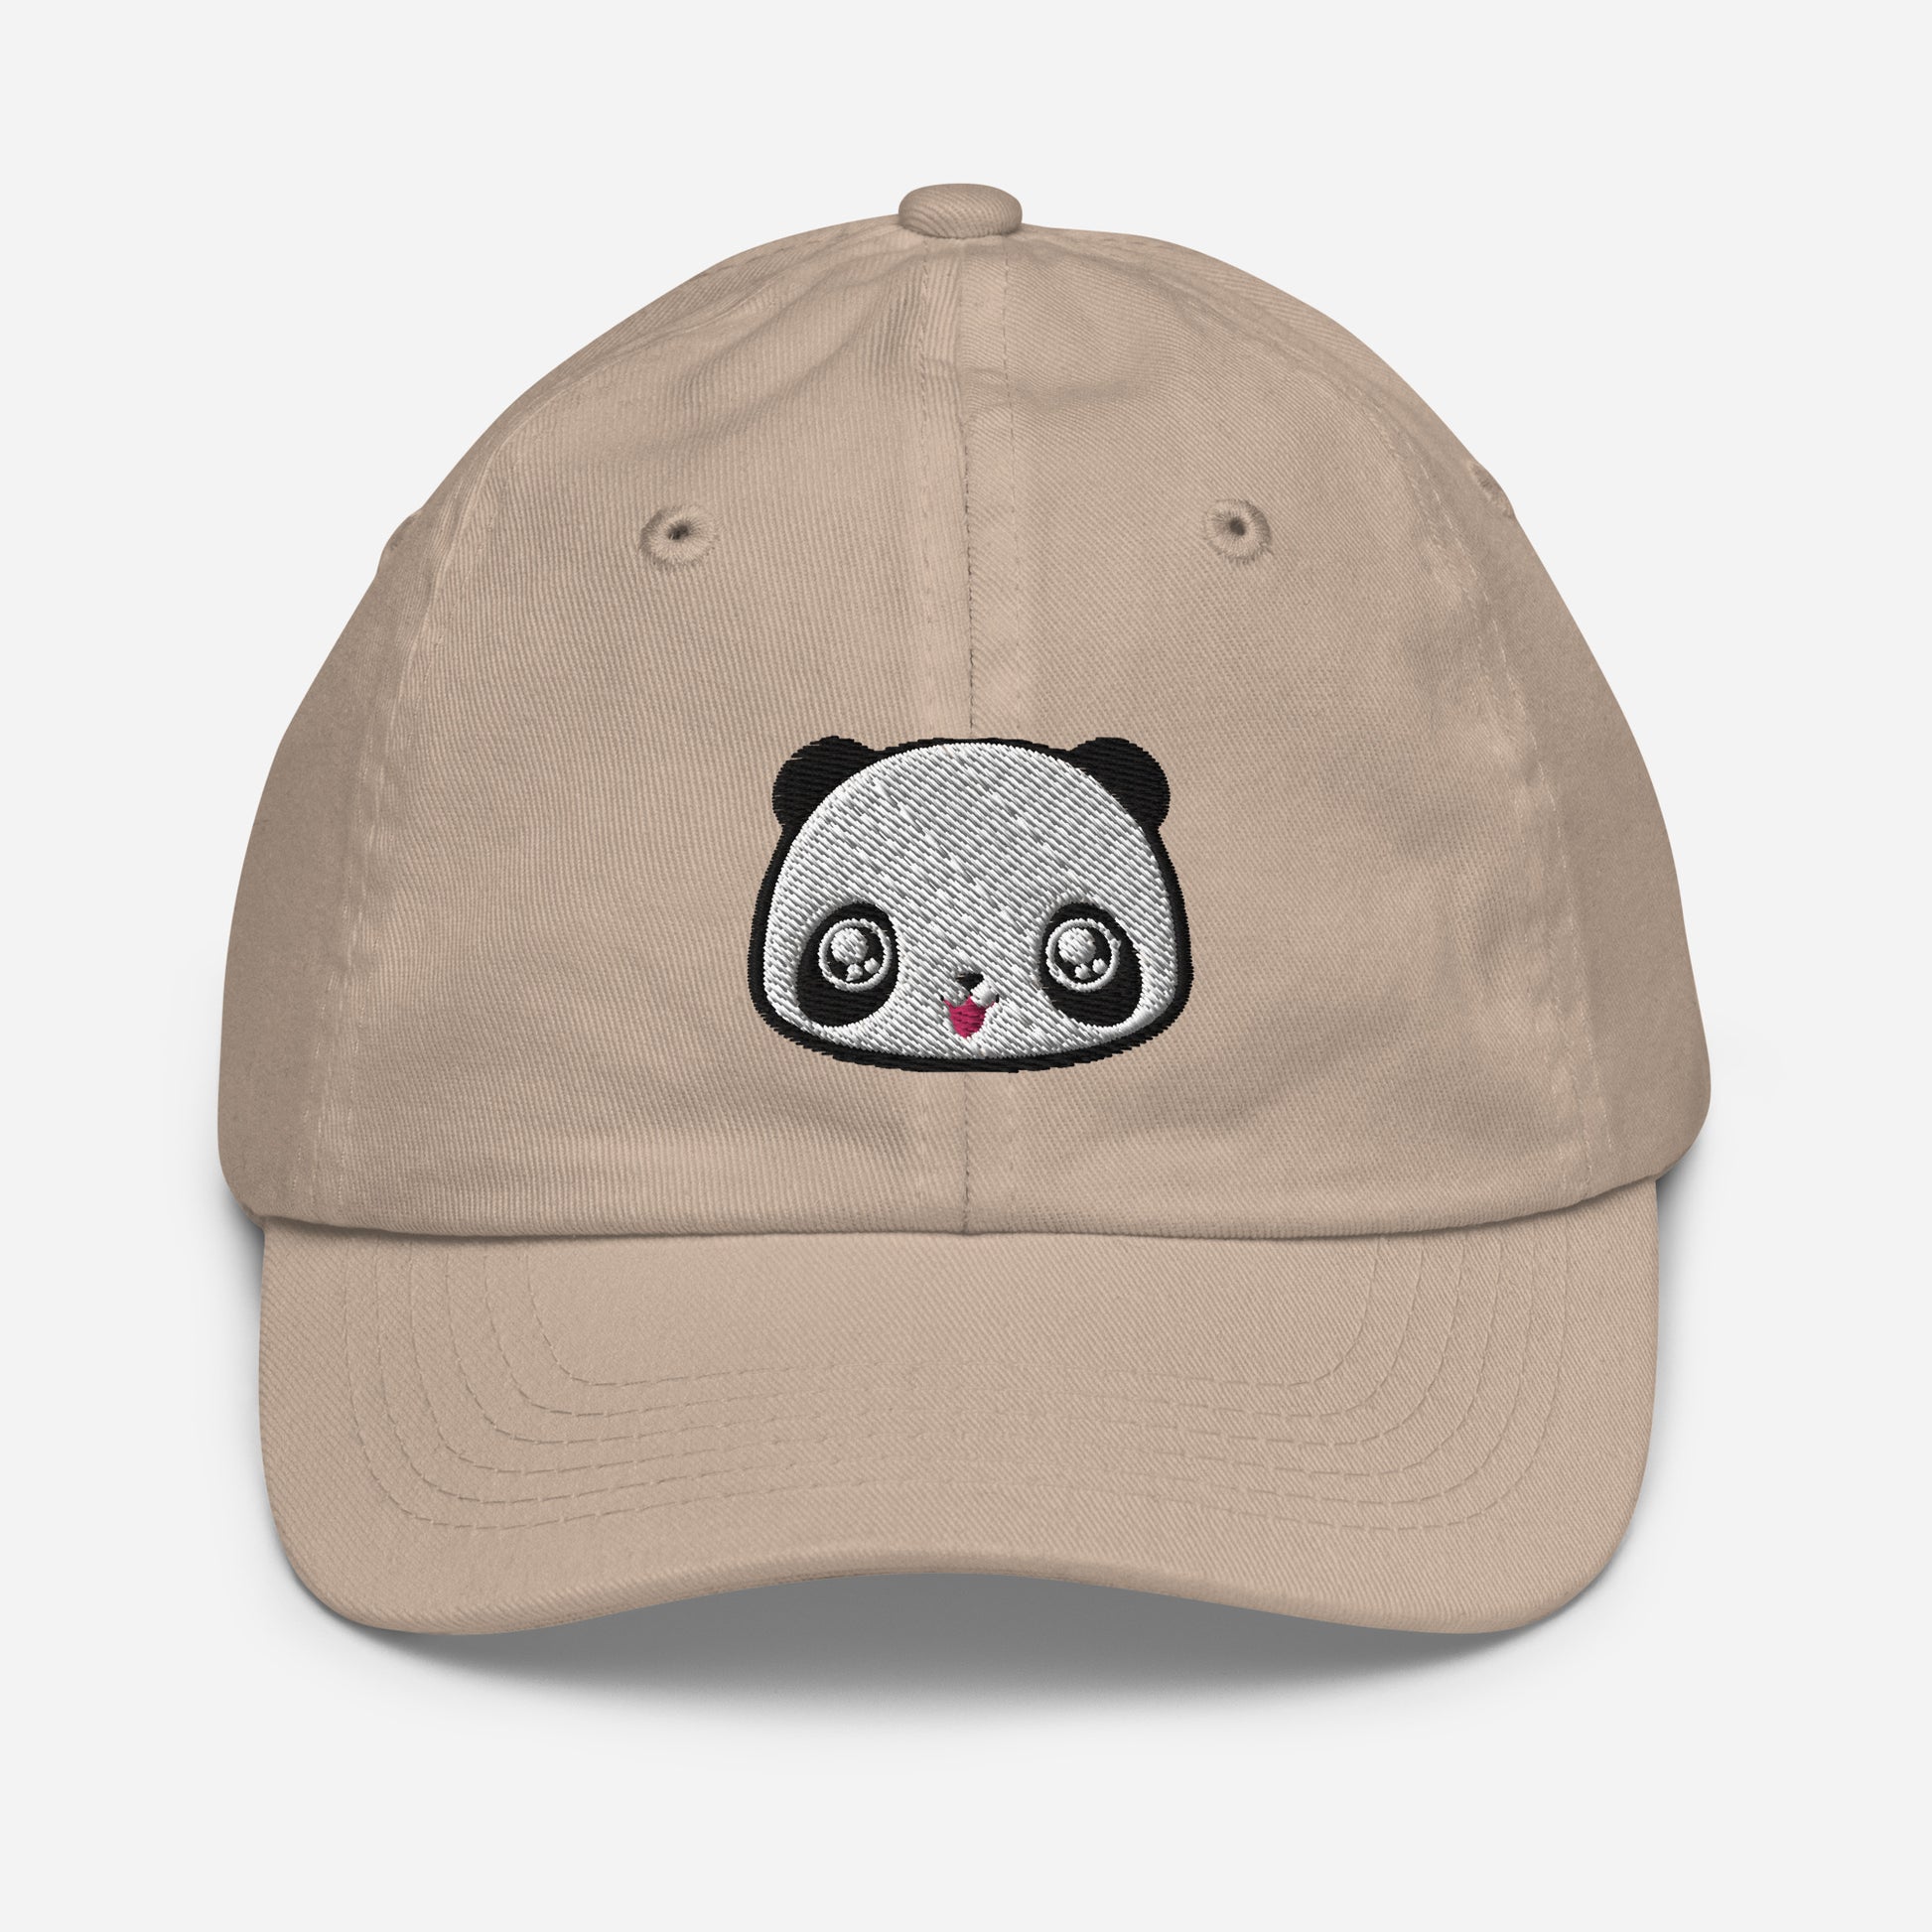 Khaki baseball cap with print of panda head